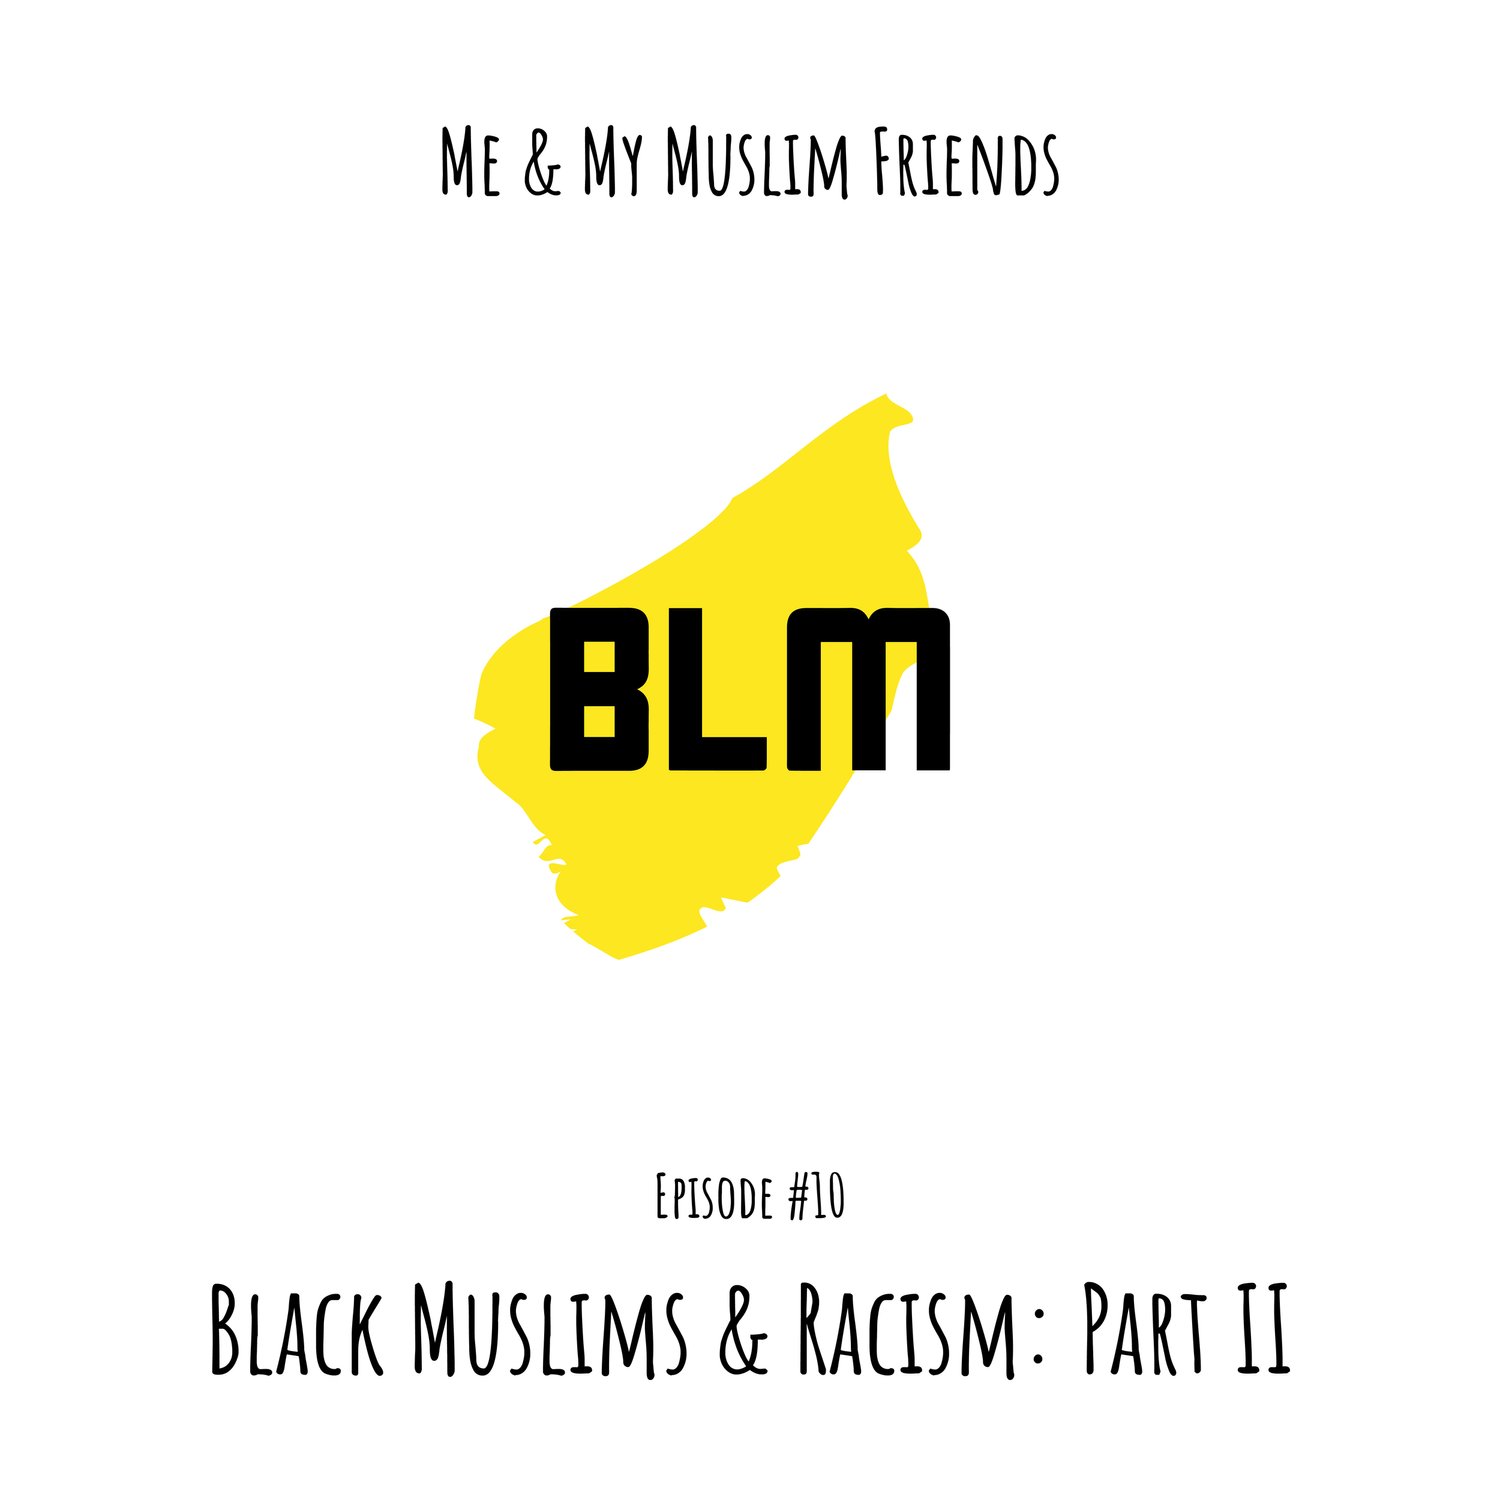 Black Muslims & Racism Part II